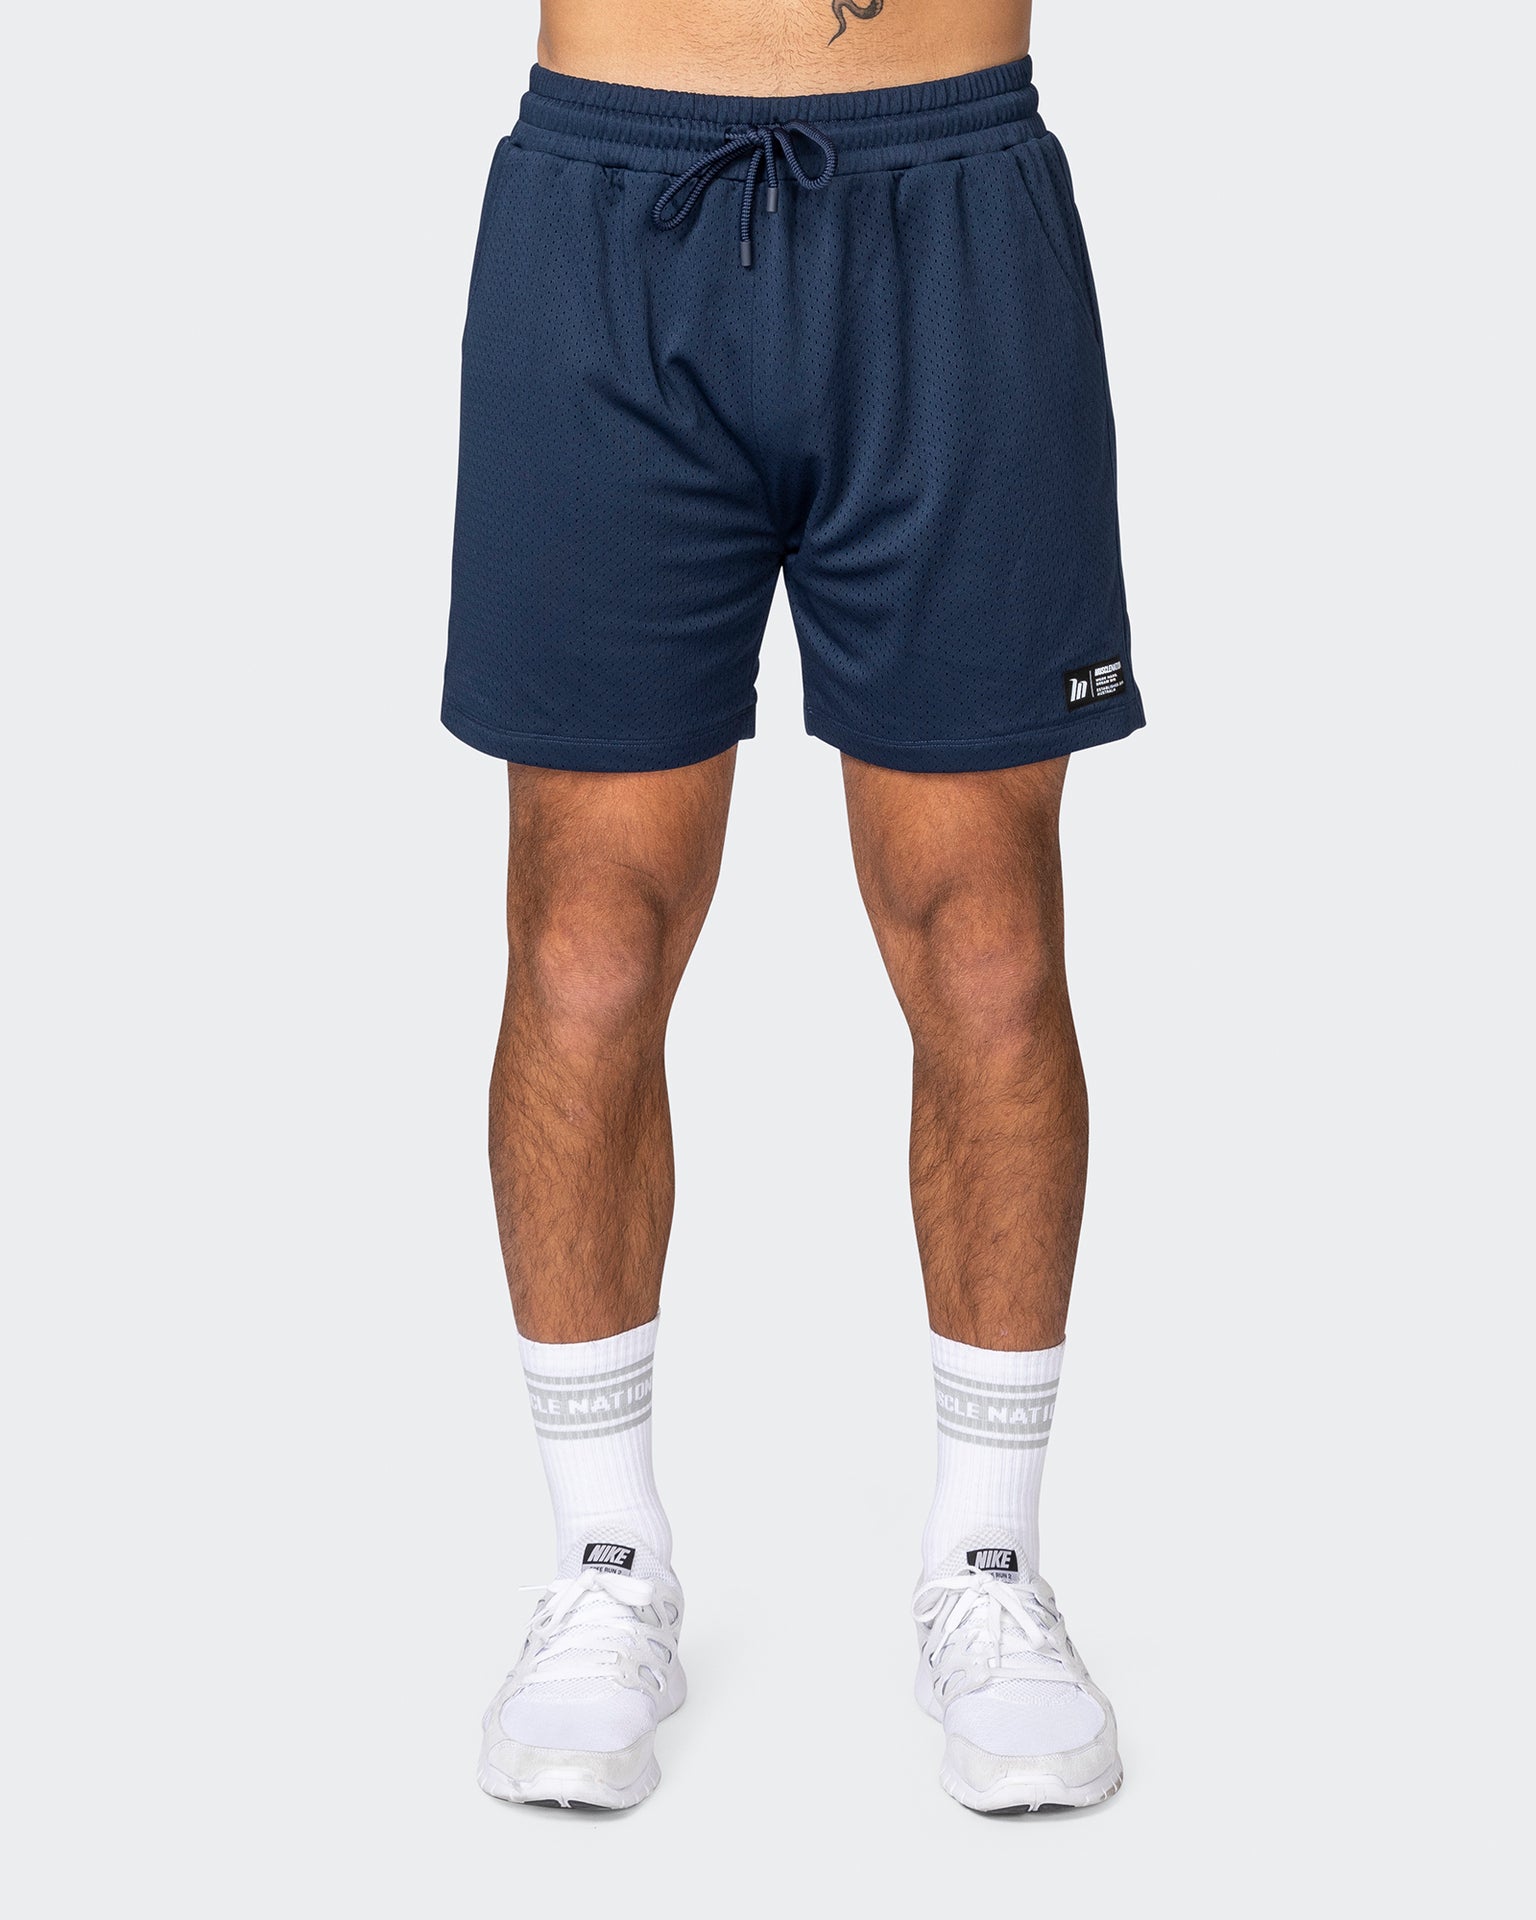 musclenation Gym Shorts Lay Up 5" Shorts - Navy